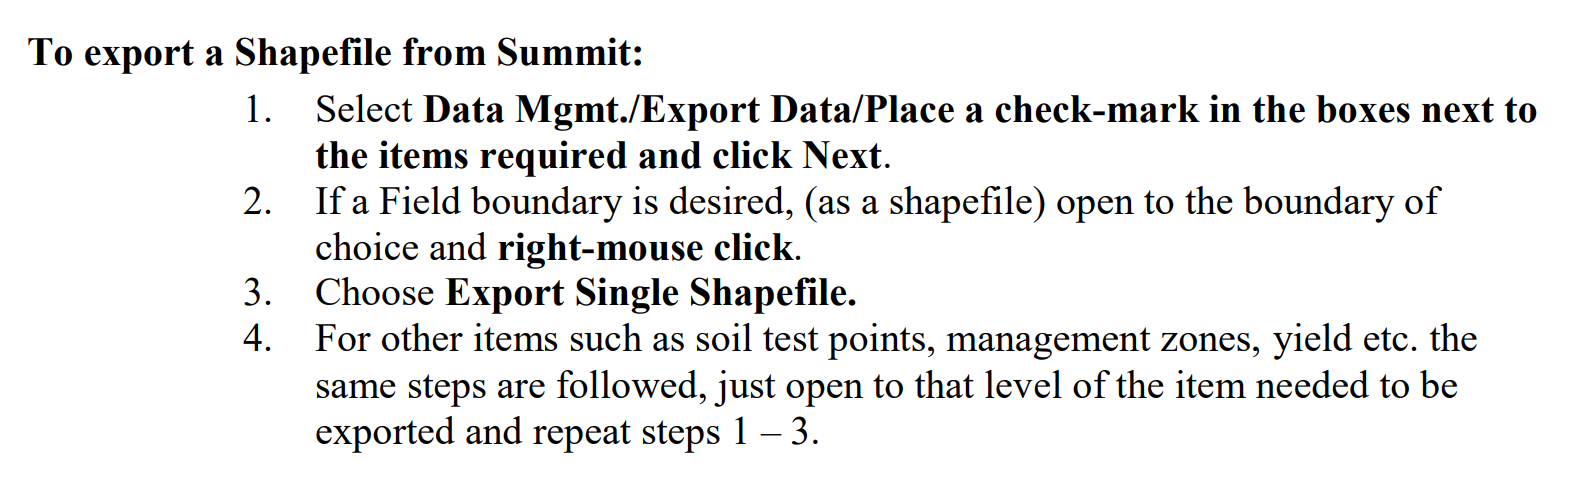 SST_shapefile_export_pdf.PNG